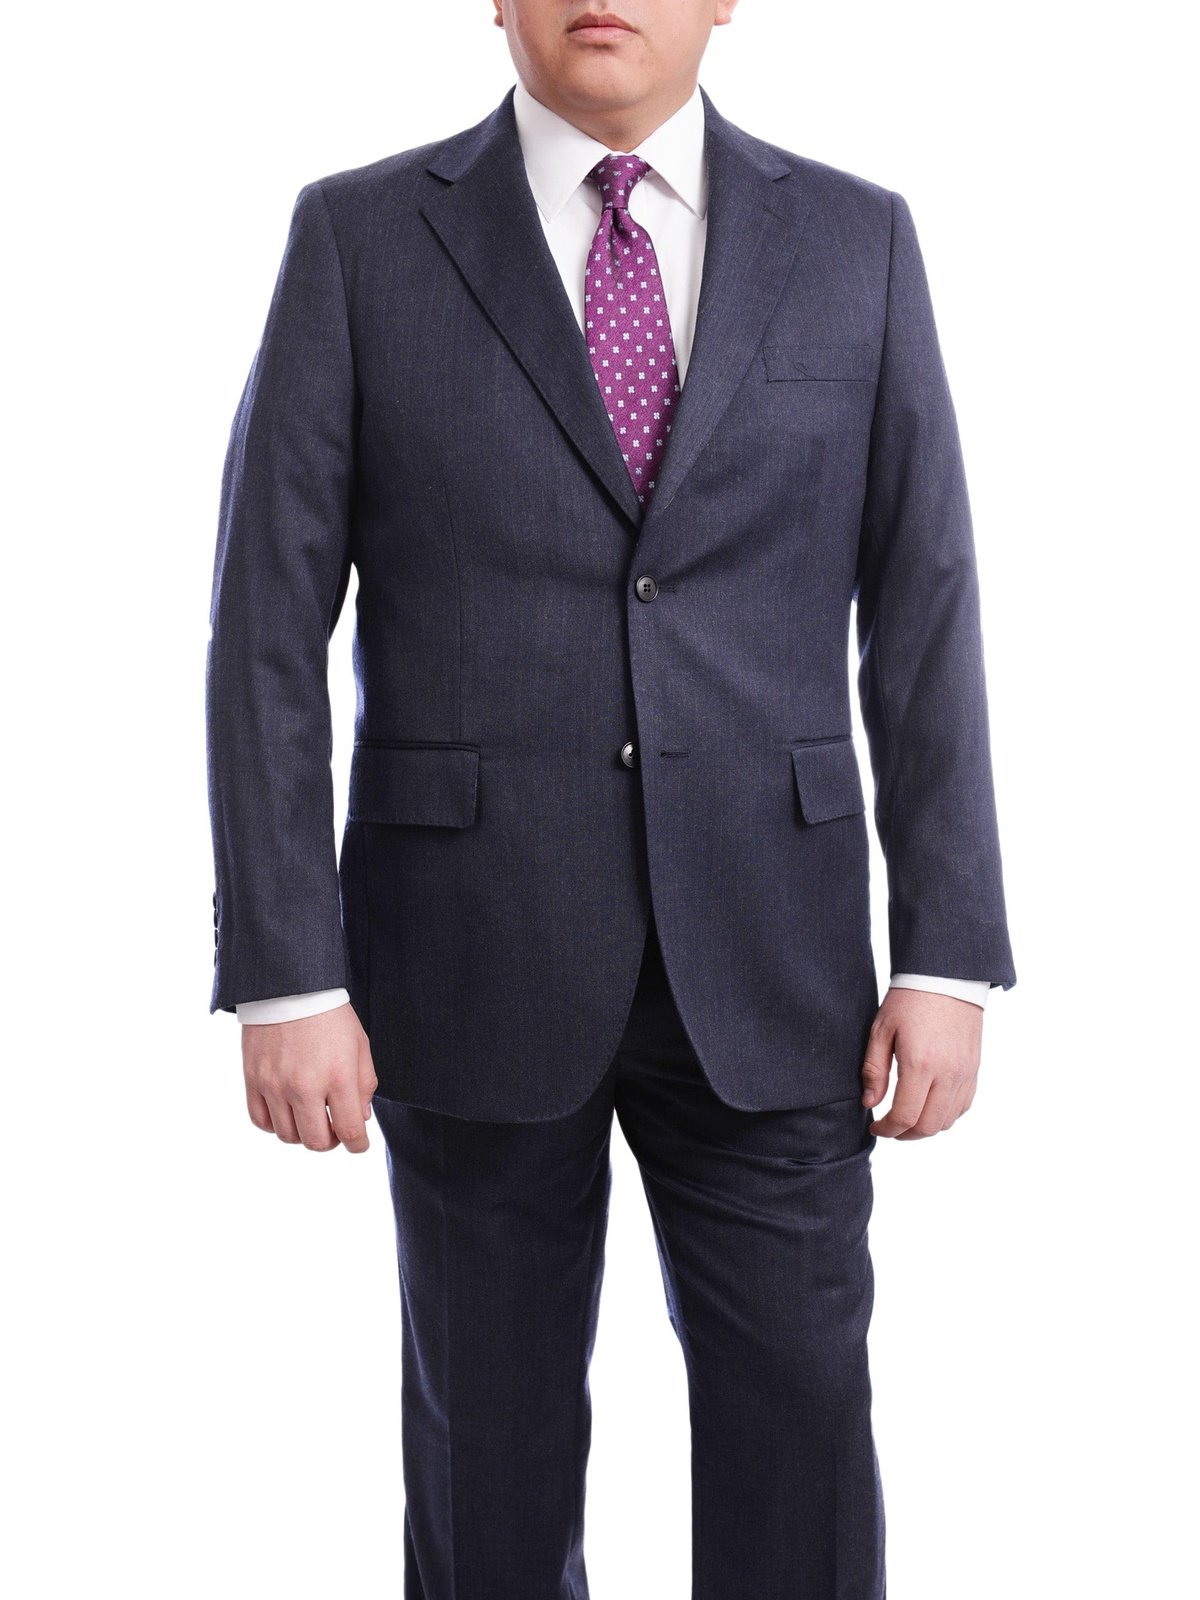 Arthur Black TWO PIECE SUITS Men&#39;s Arthur Black Executive Portly Fit Solid Blue Two Button 2 Piece Wool Suit